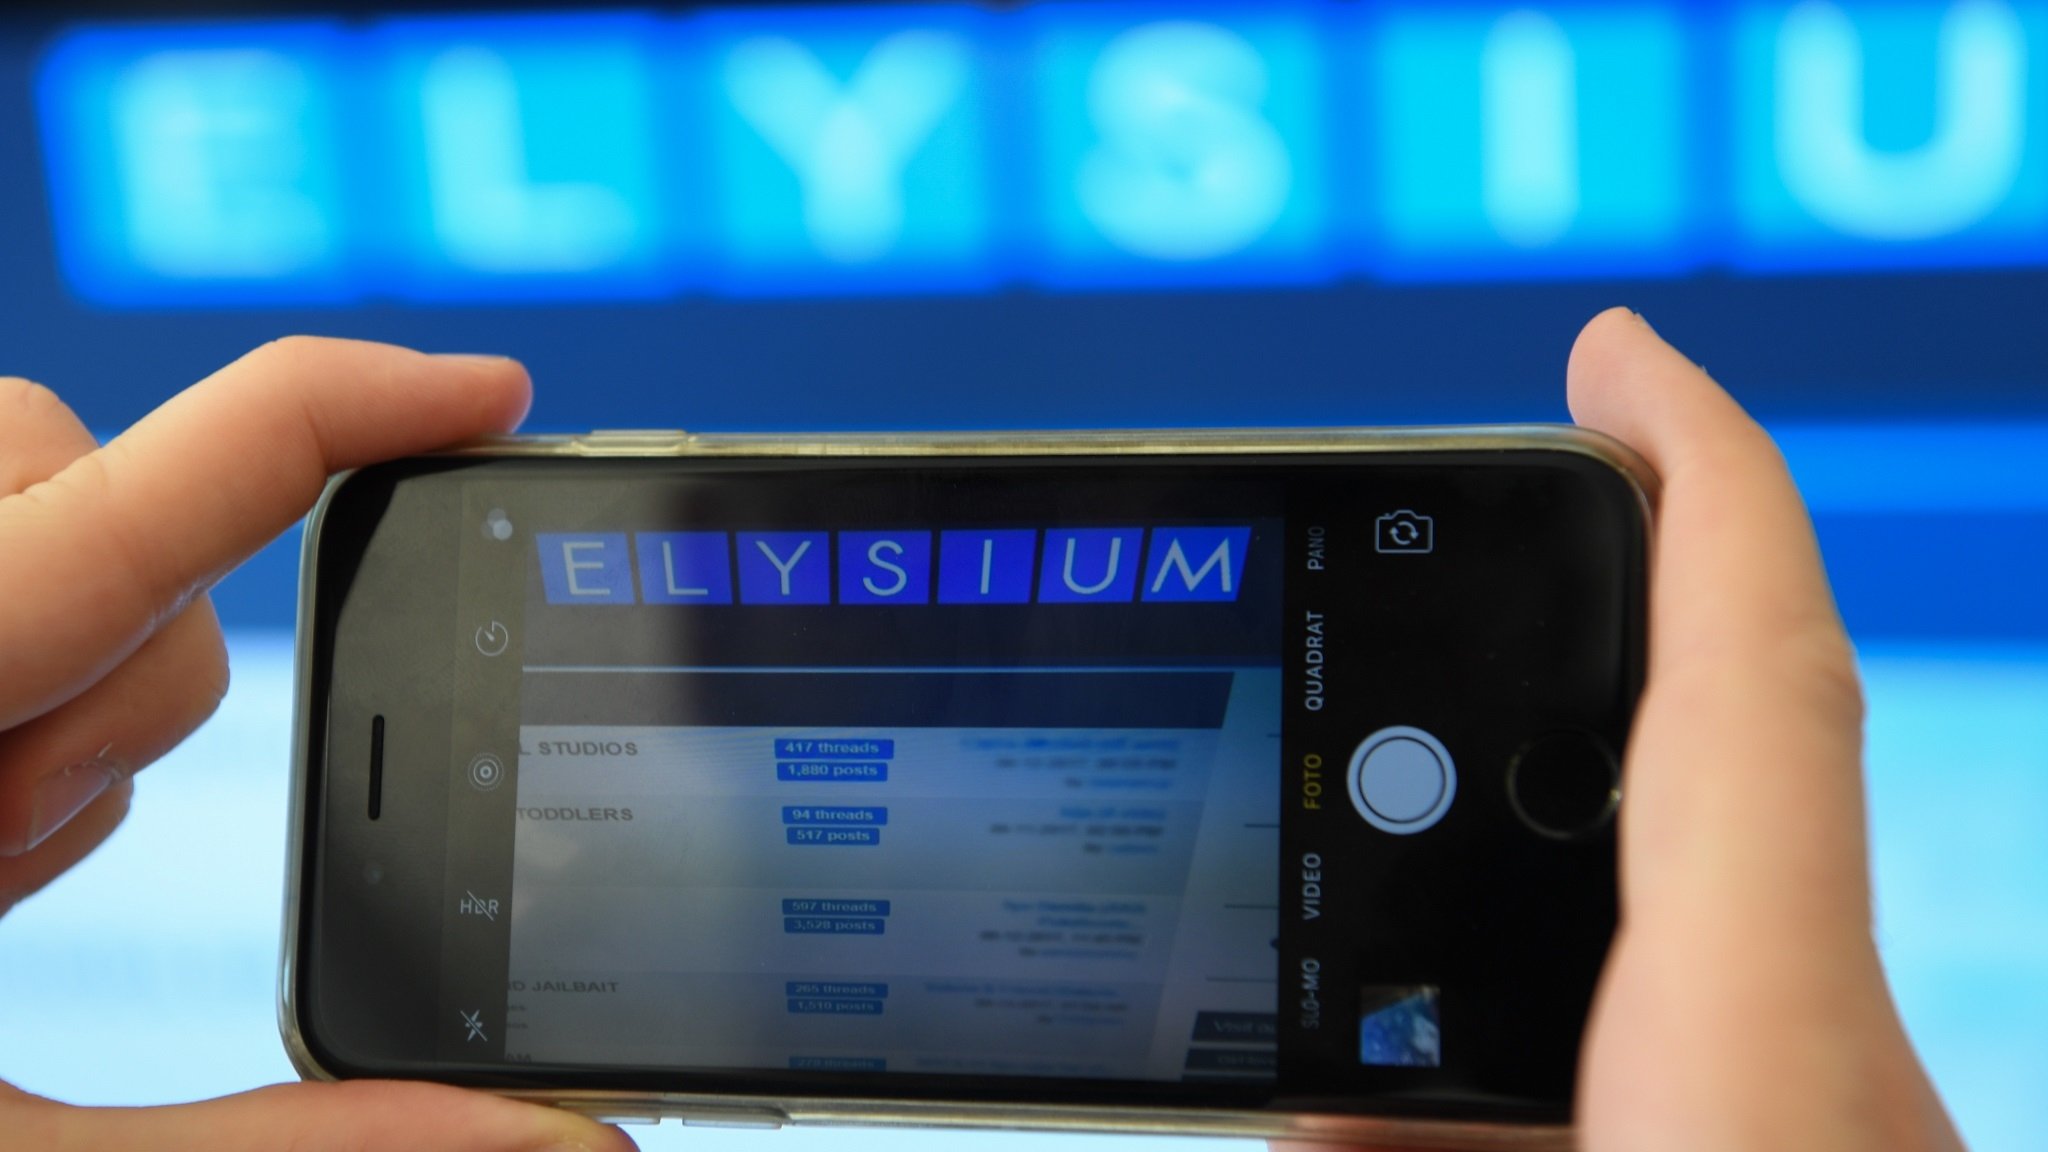 Das Wort "Elysium" am Rande einer Pressekonferenz von Bundeskriminalamt (BKA) und Generalstaatsanwaltschaft Frankfurt in Wiesbaden am 7.7.2017 auf dem Monitor eines Smartphones